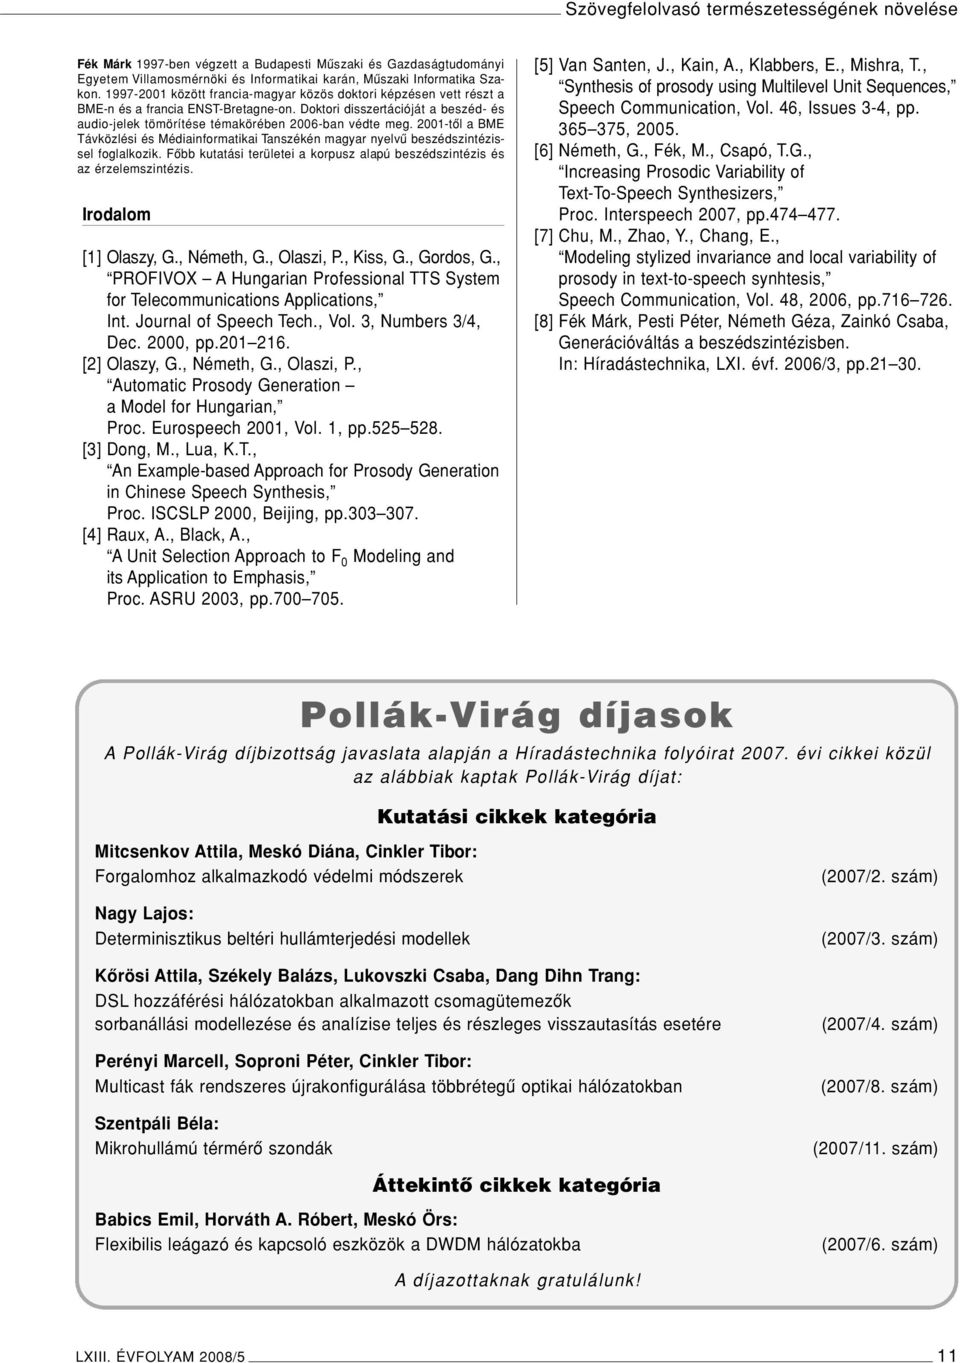 2001-tôl a BME Távközlési és Médiainformatikai Tanszékén magyar nyelvû beszédszintézissel foglalkozik. Fôbb kutatási területei a korpusz alapú beszédszintézis és az érzelemszintézis.